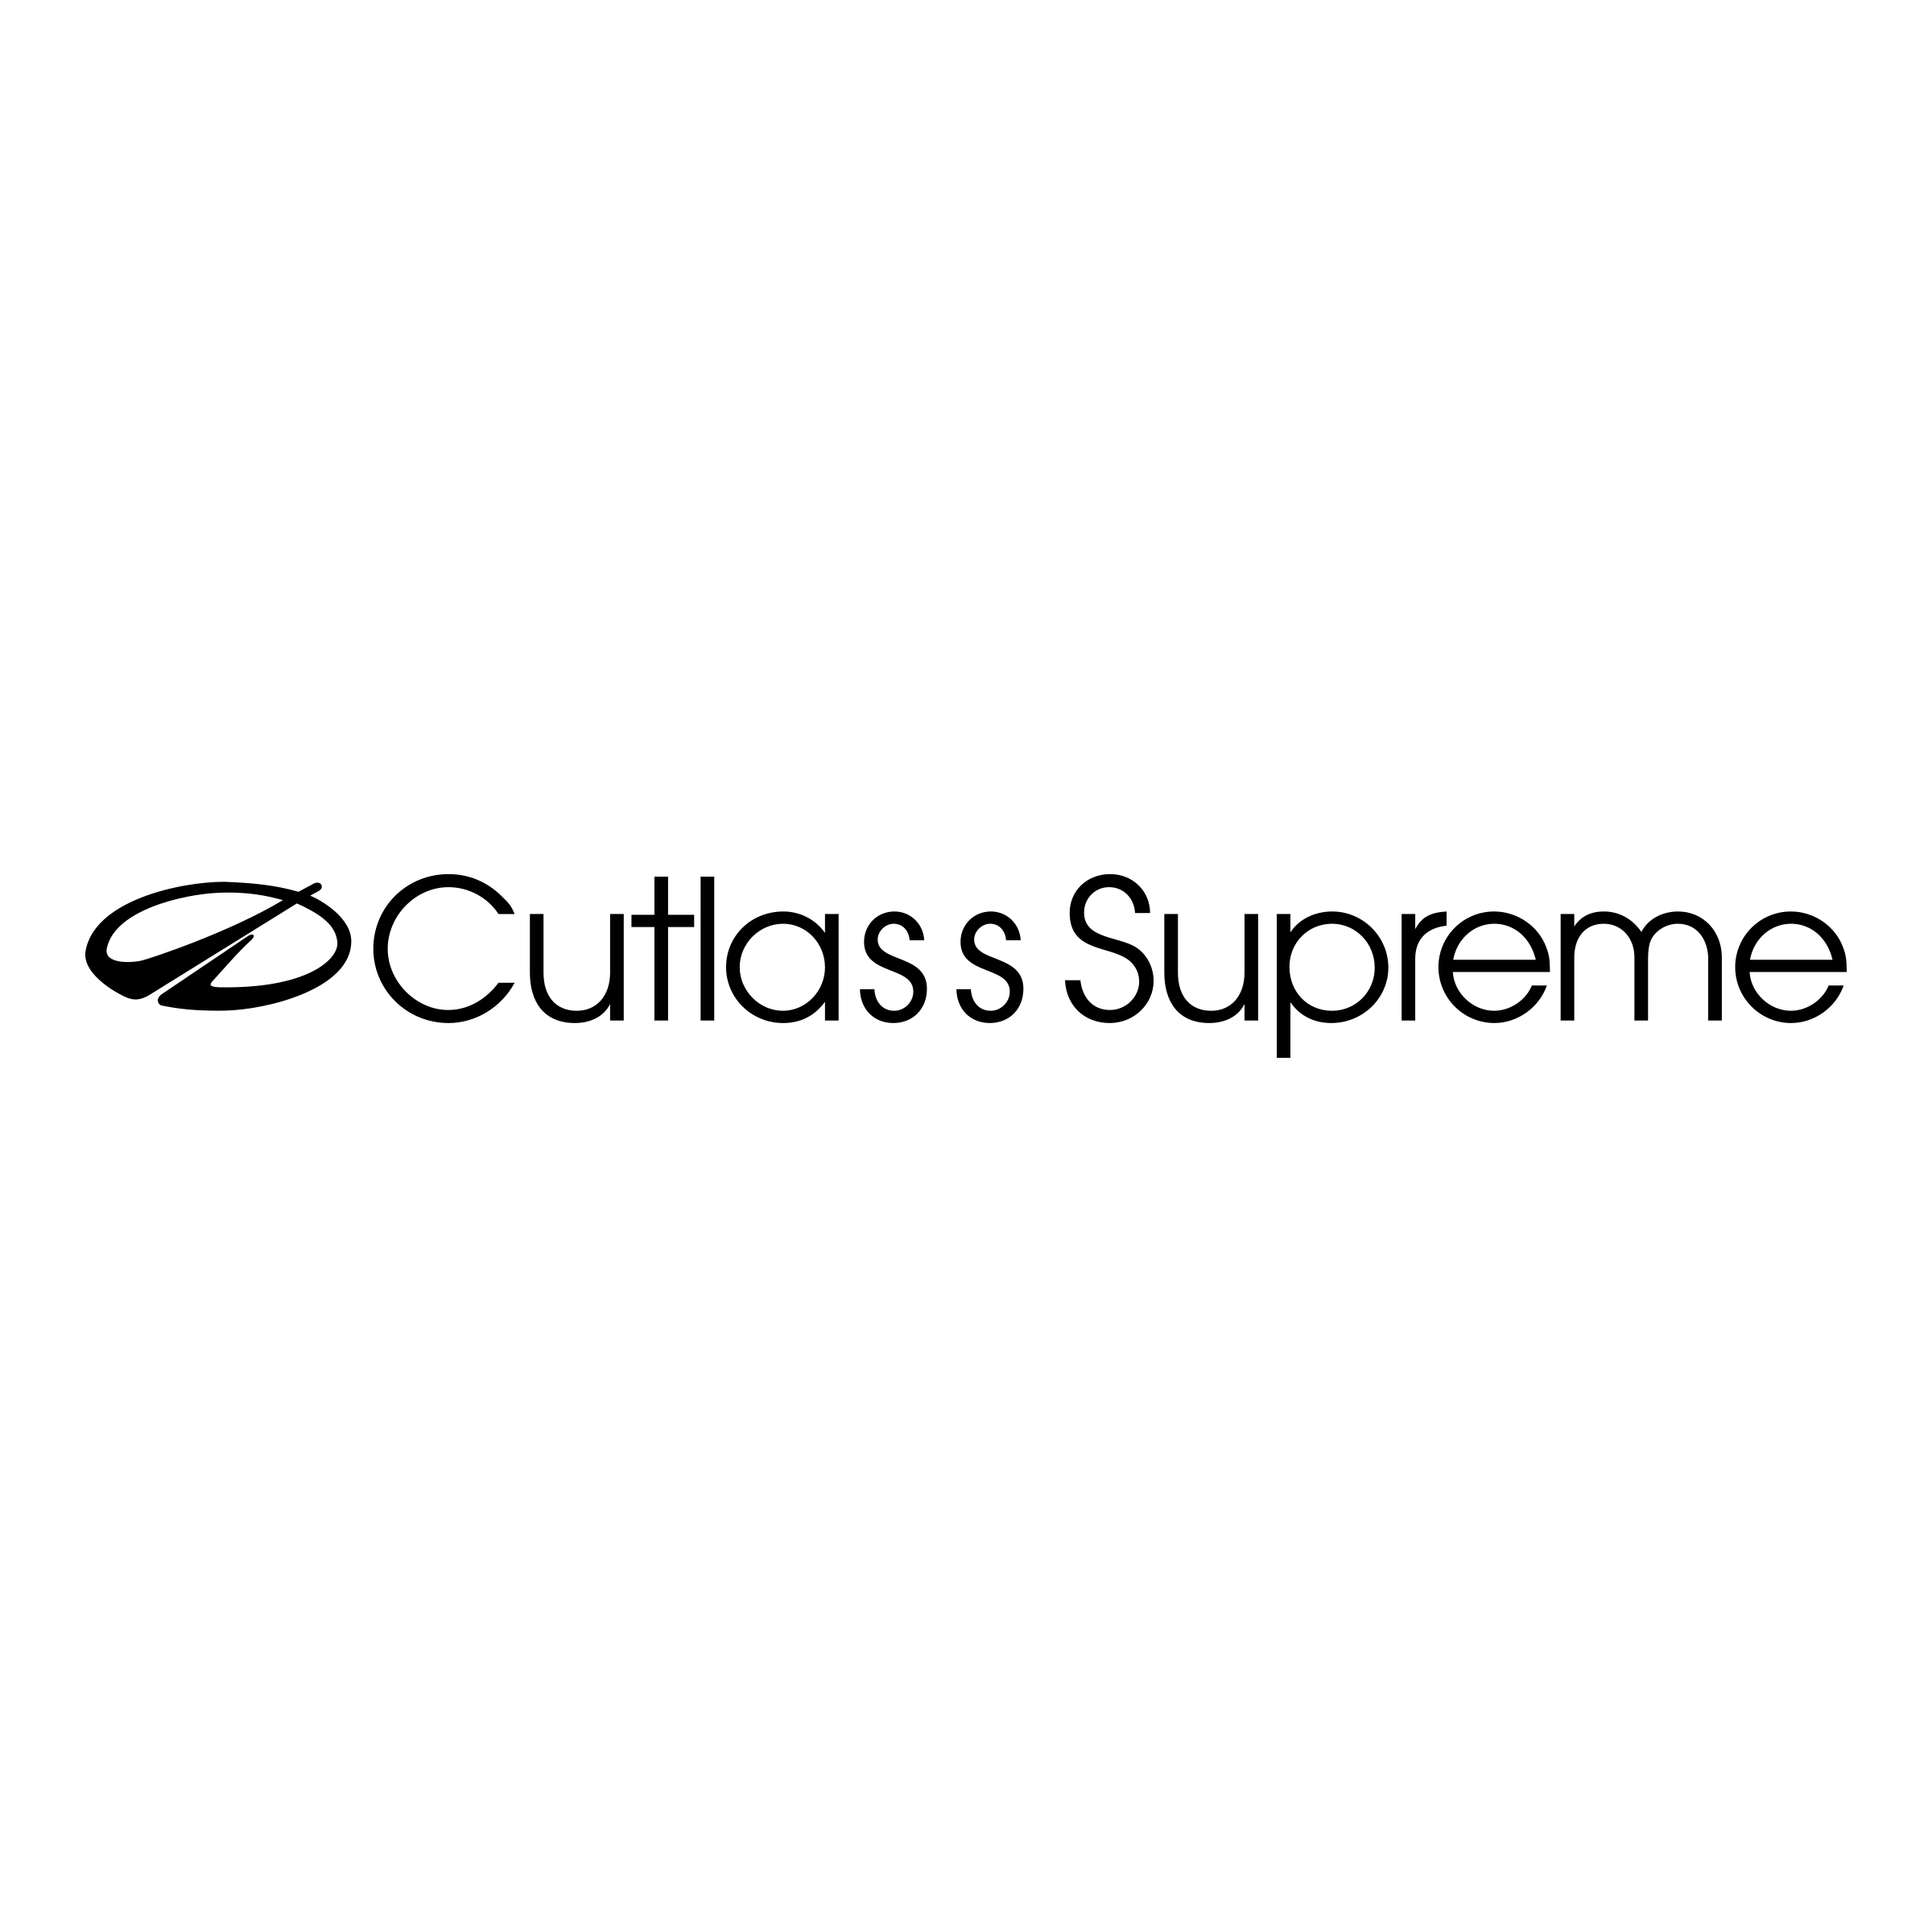 Transperant Black Supreme Logo - Cutlass Supreme Logo PNG Transparent & SVG Vector